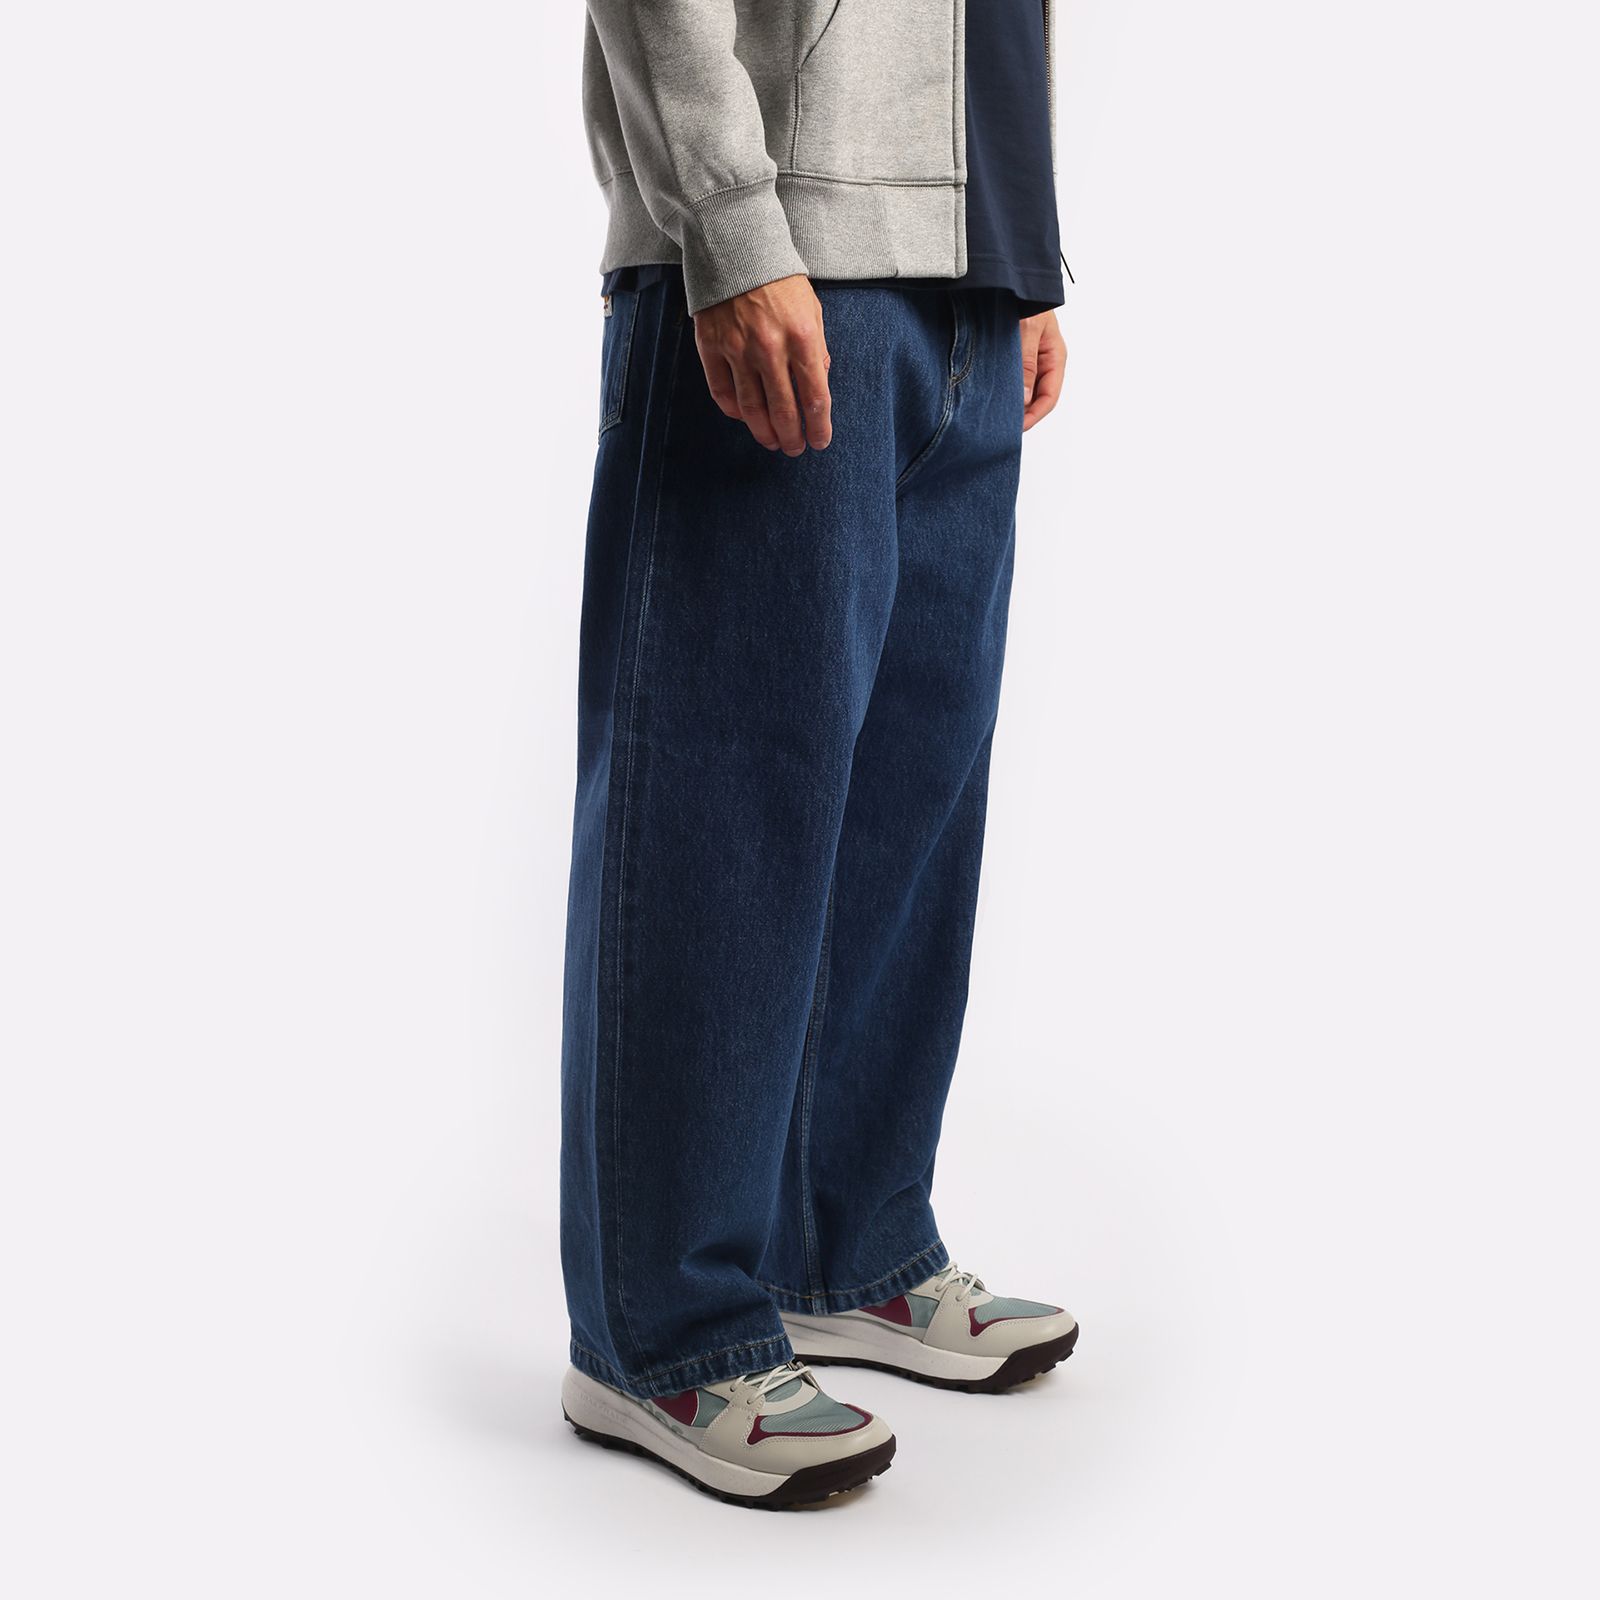 мужские синие брюки Carhartt WIP Smith I031246-blue - цена, описание, фото 5